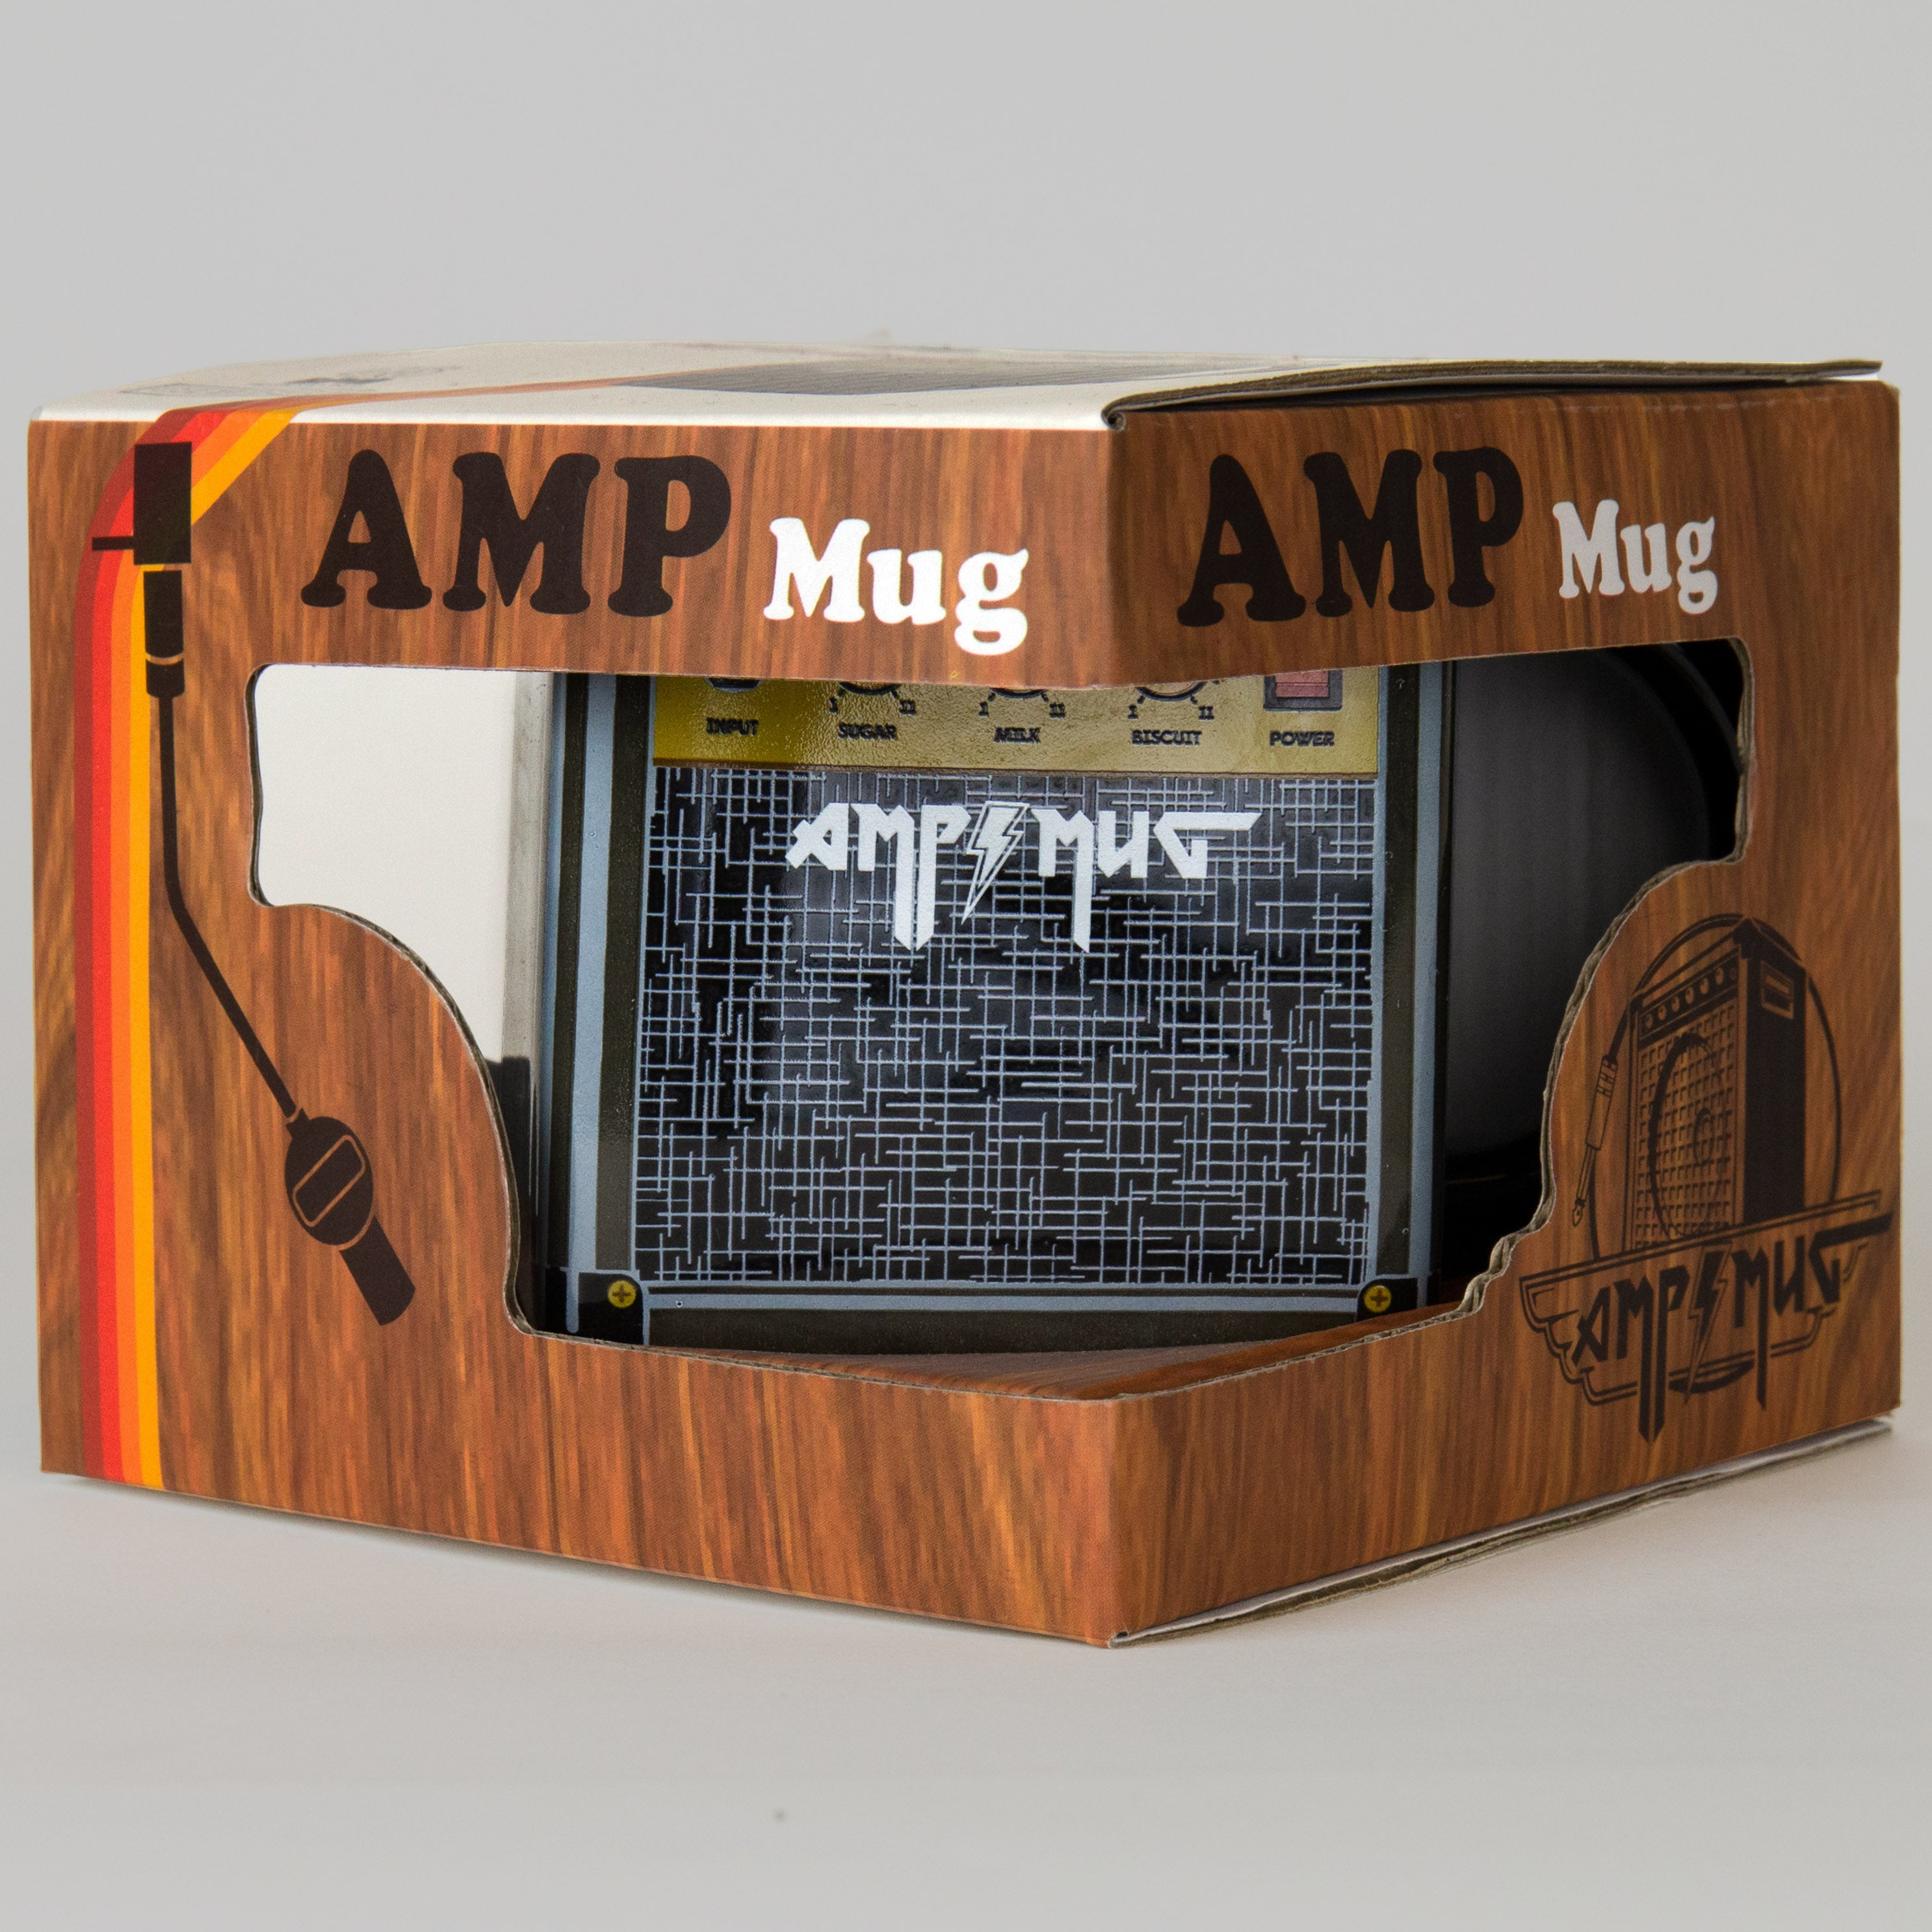 Boxed Mug - Amp Mug